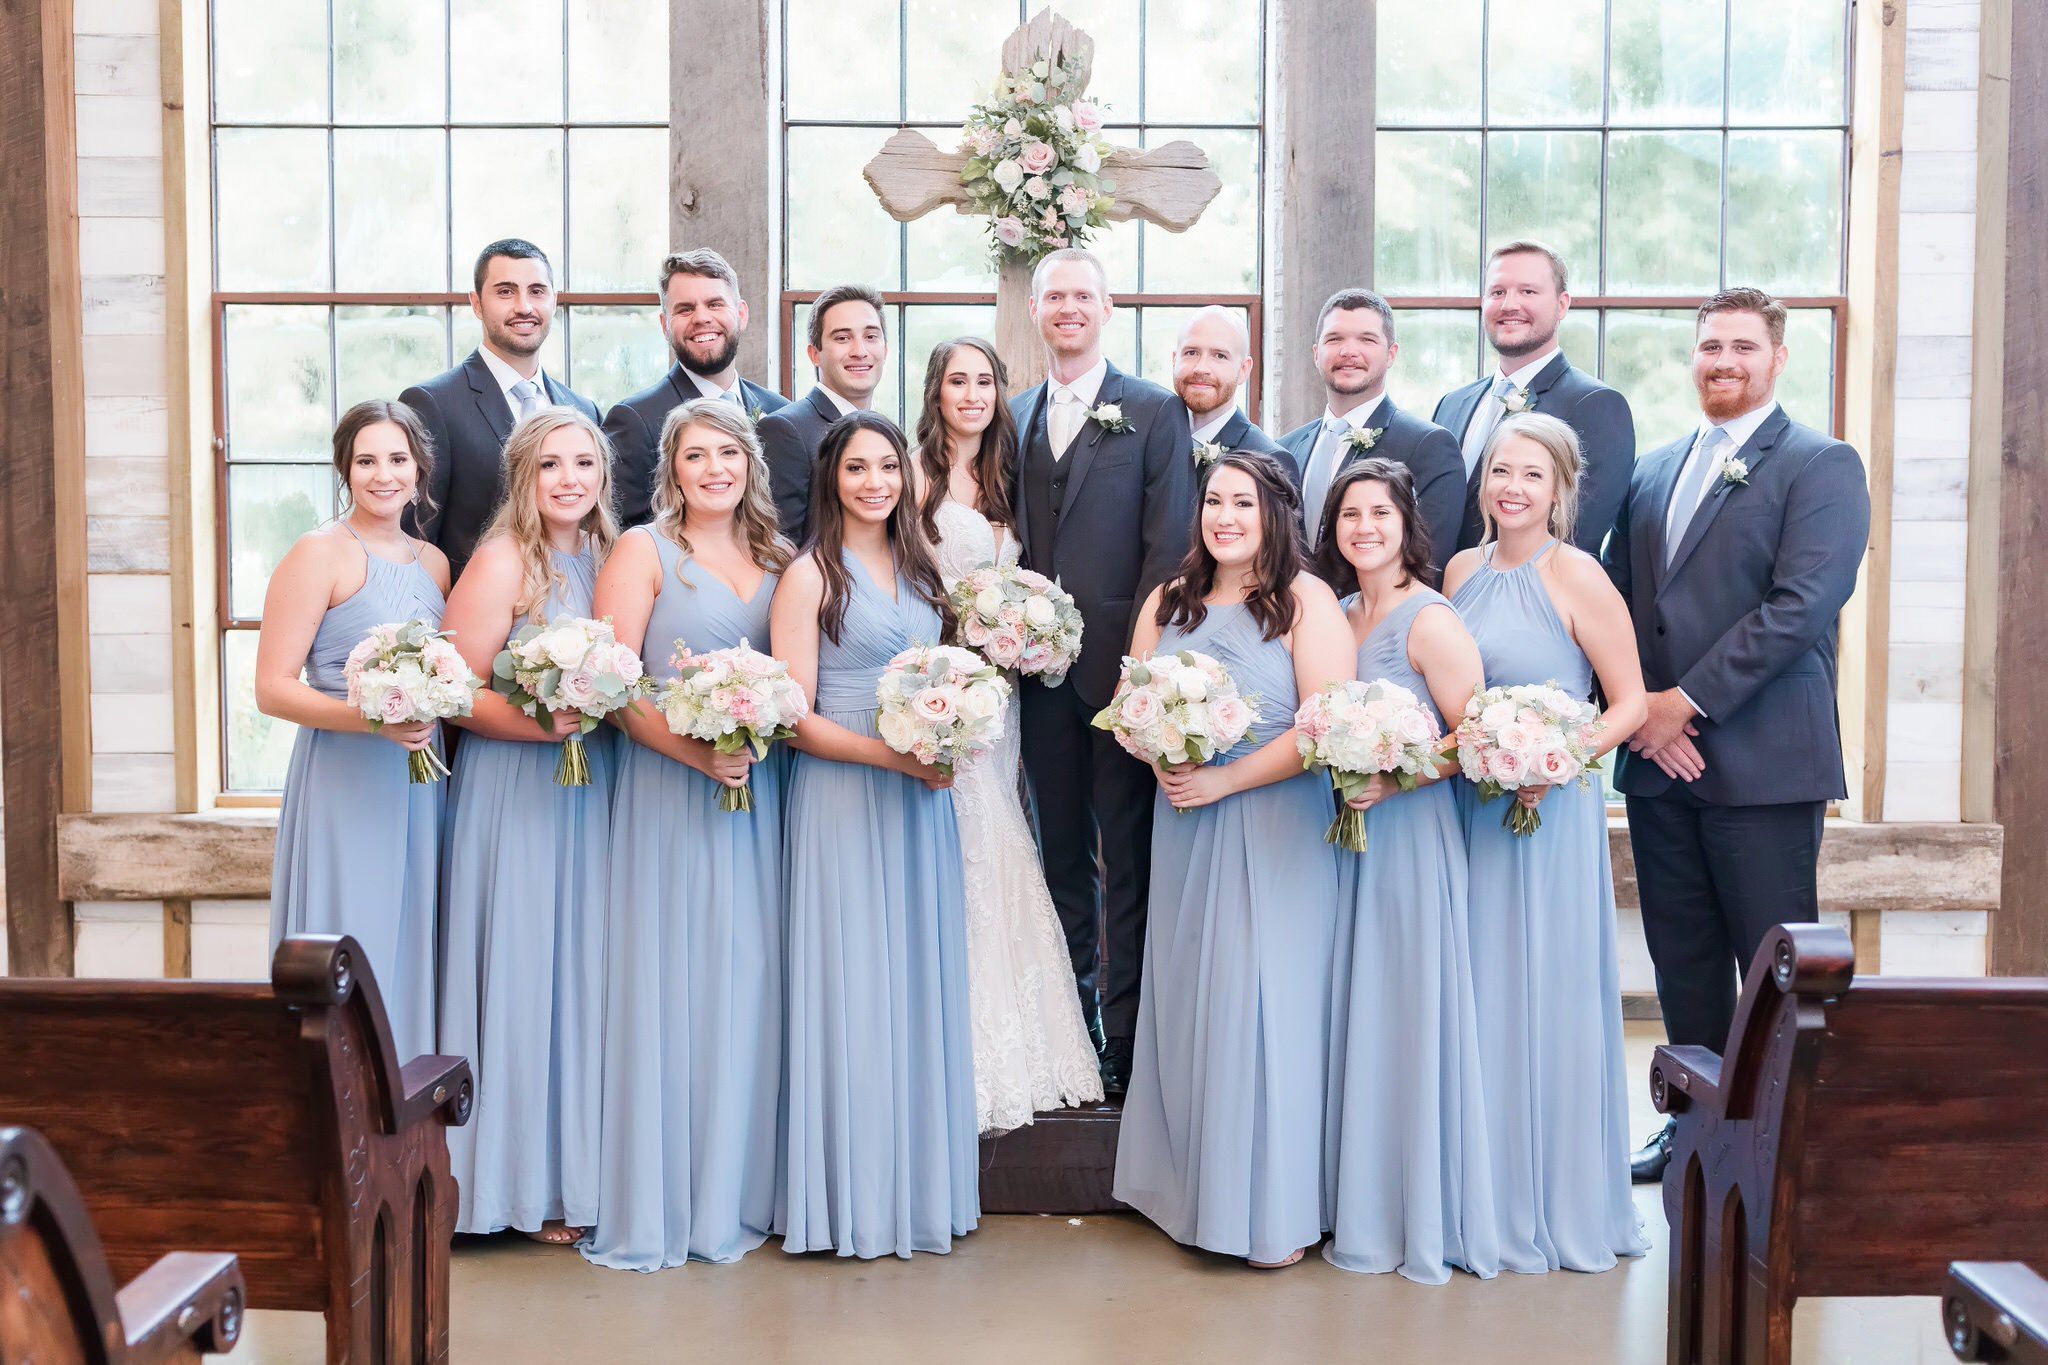 A Dusty Blue & Blush Wedding at Big Sky Barn in Montgomery, TX by Dawn Elizabeth Studios, Texas Wedding Photographer